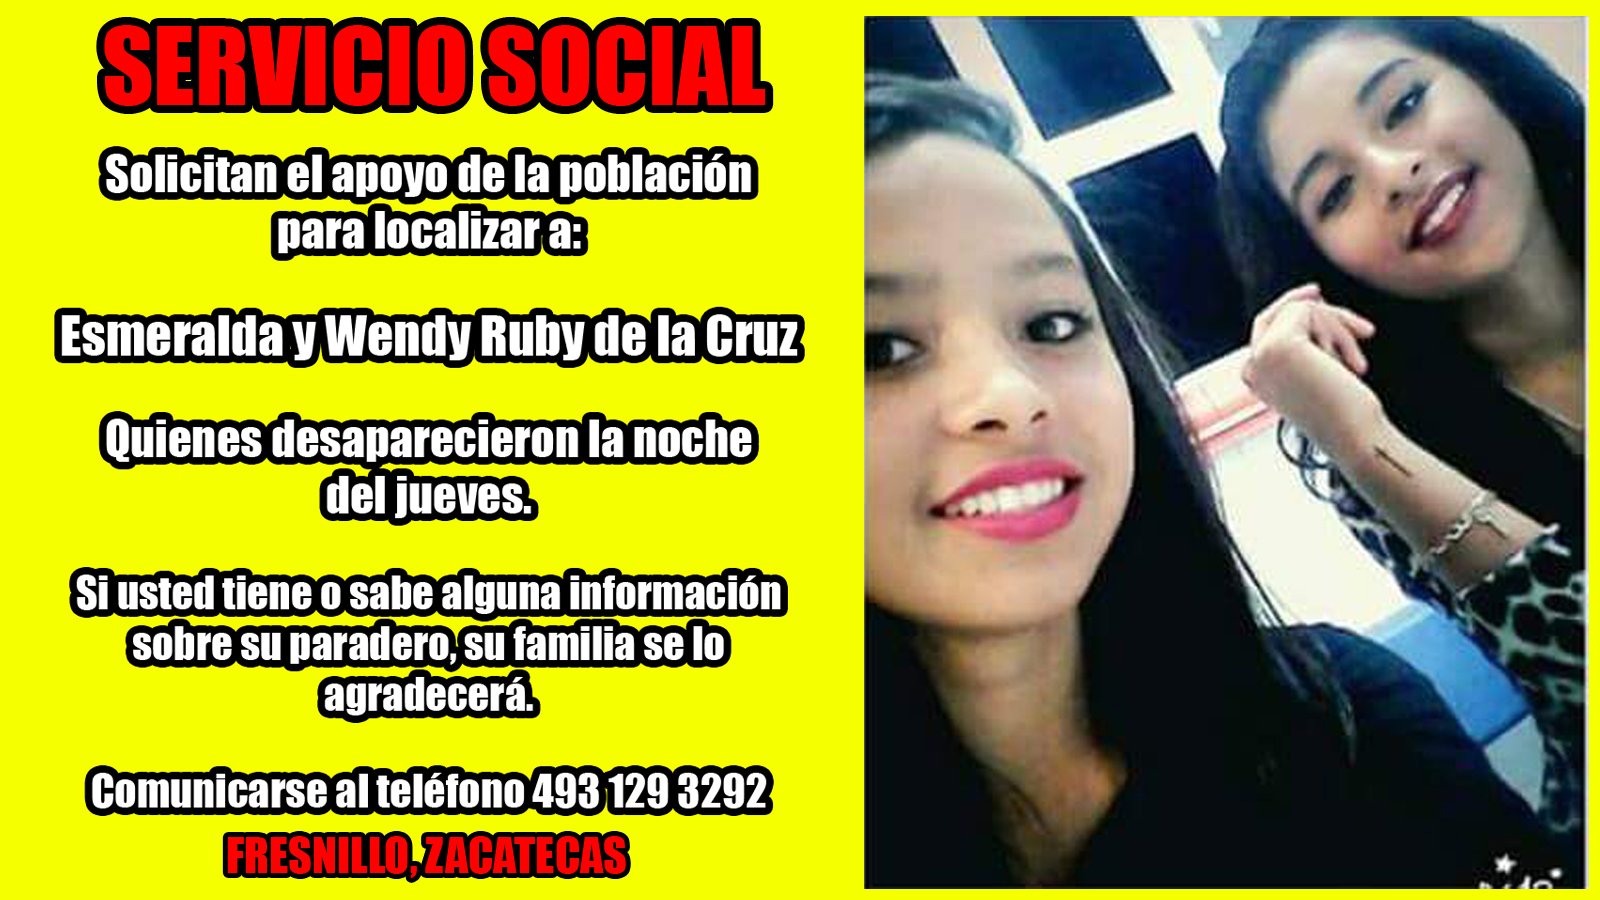 ¡Servicio Social para localizar a dos jovencitas de Fresnillo, Zacatecas!